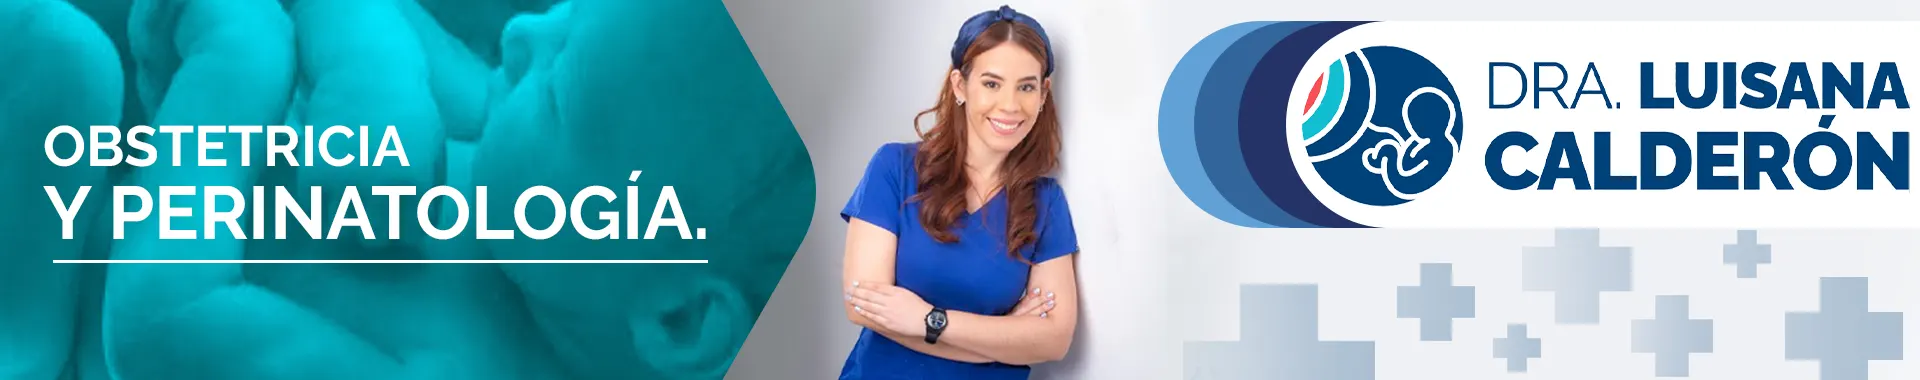 Imagen 1 del perfil de Dra. Luisana Calderón